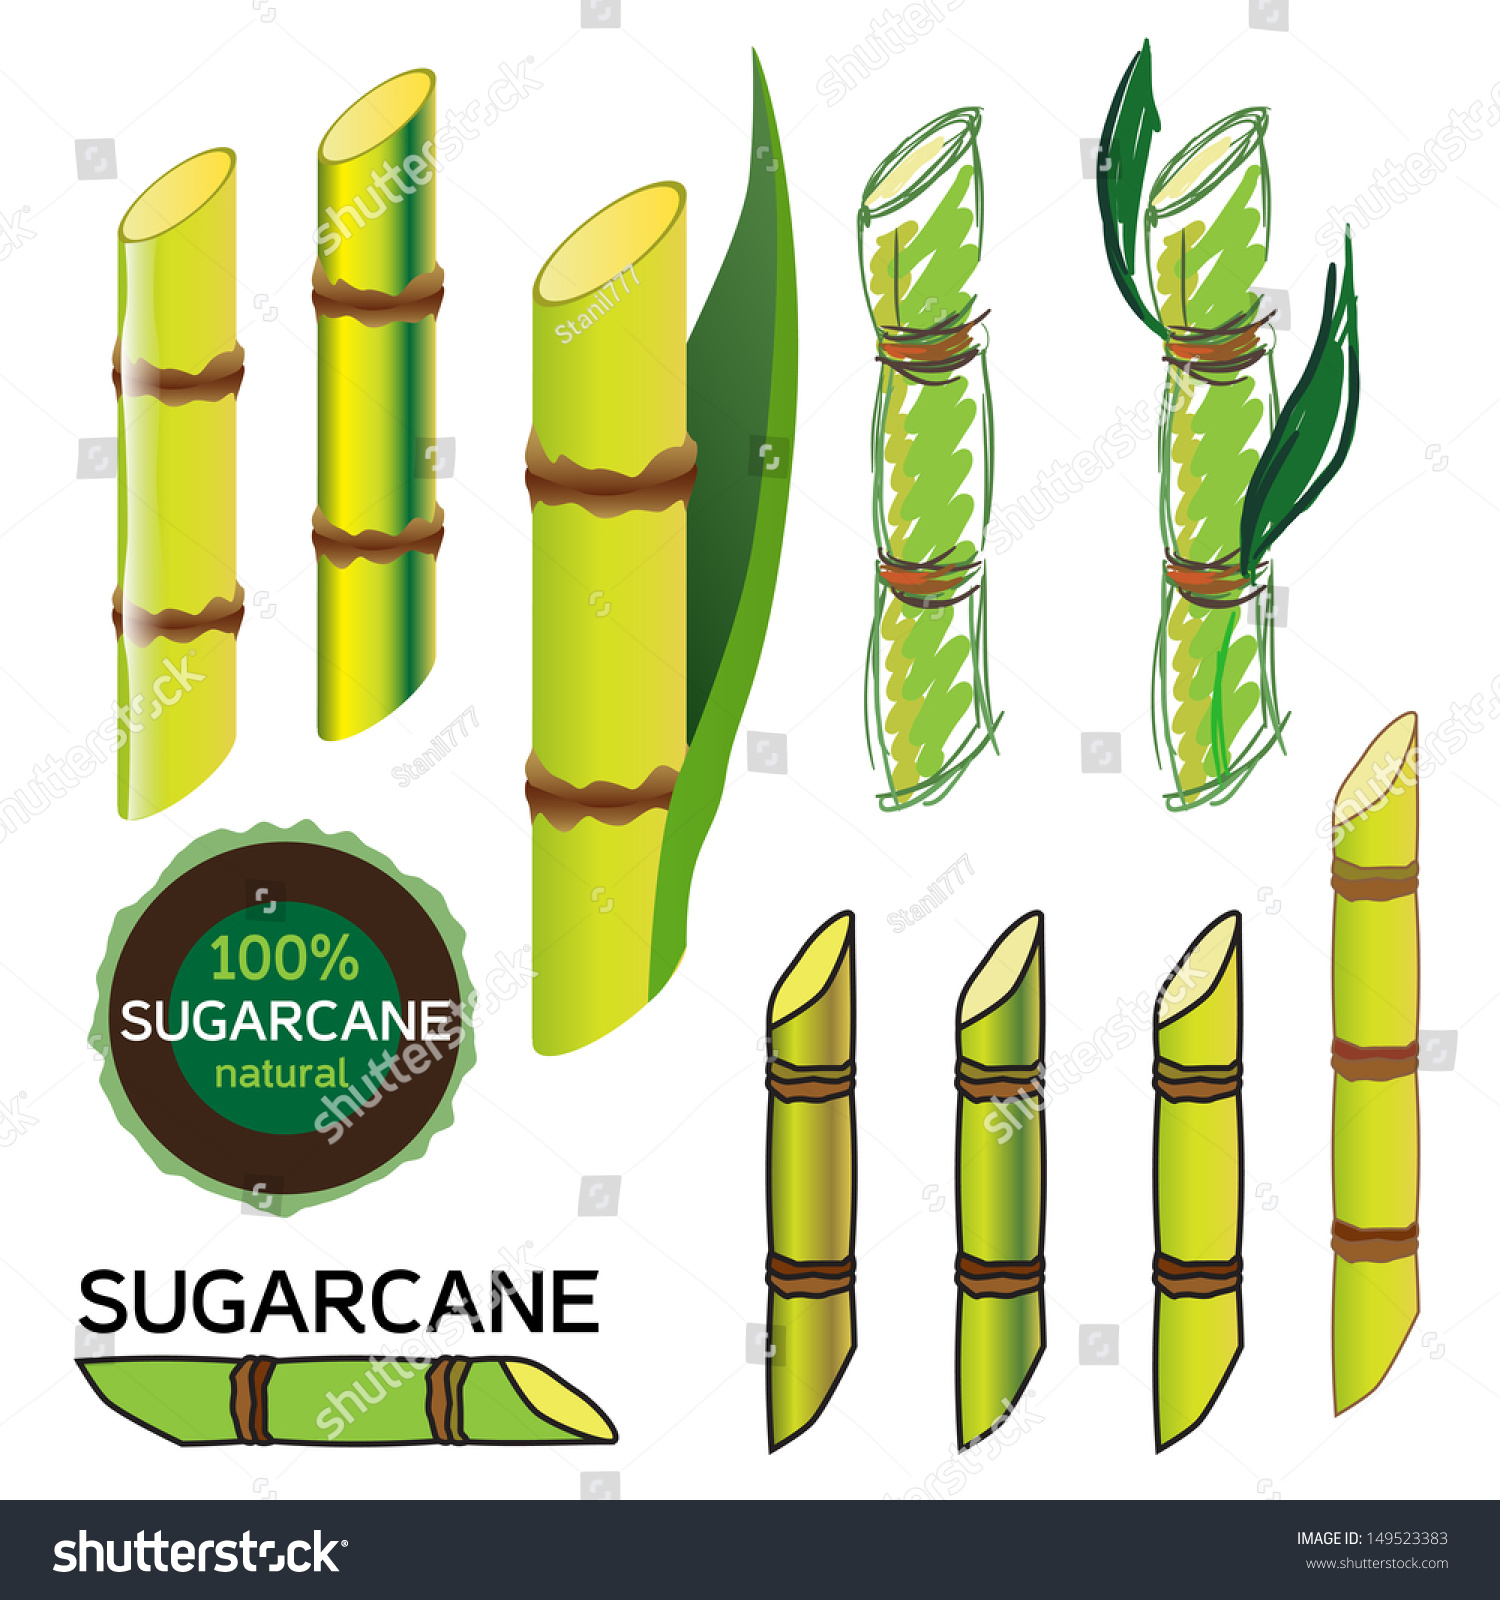 Sugarcane Set In Vector 149523383 Shutterstock 